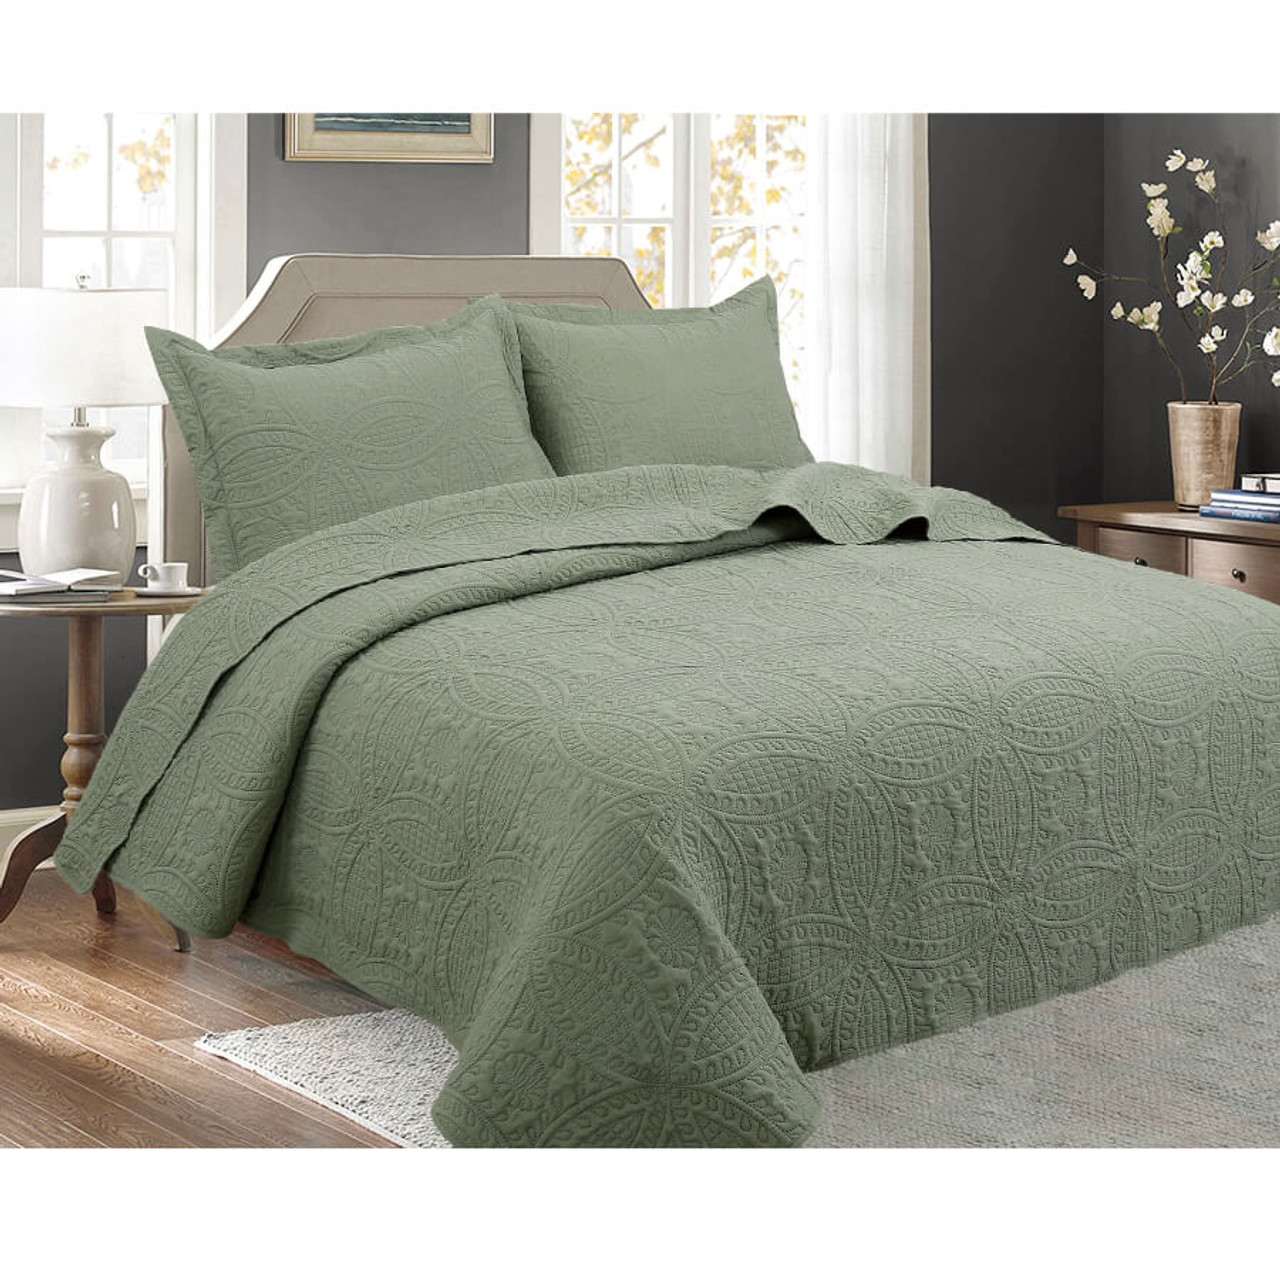 3 pcs Oversized Bedspread Coverlet Set Sage Color